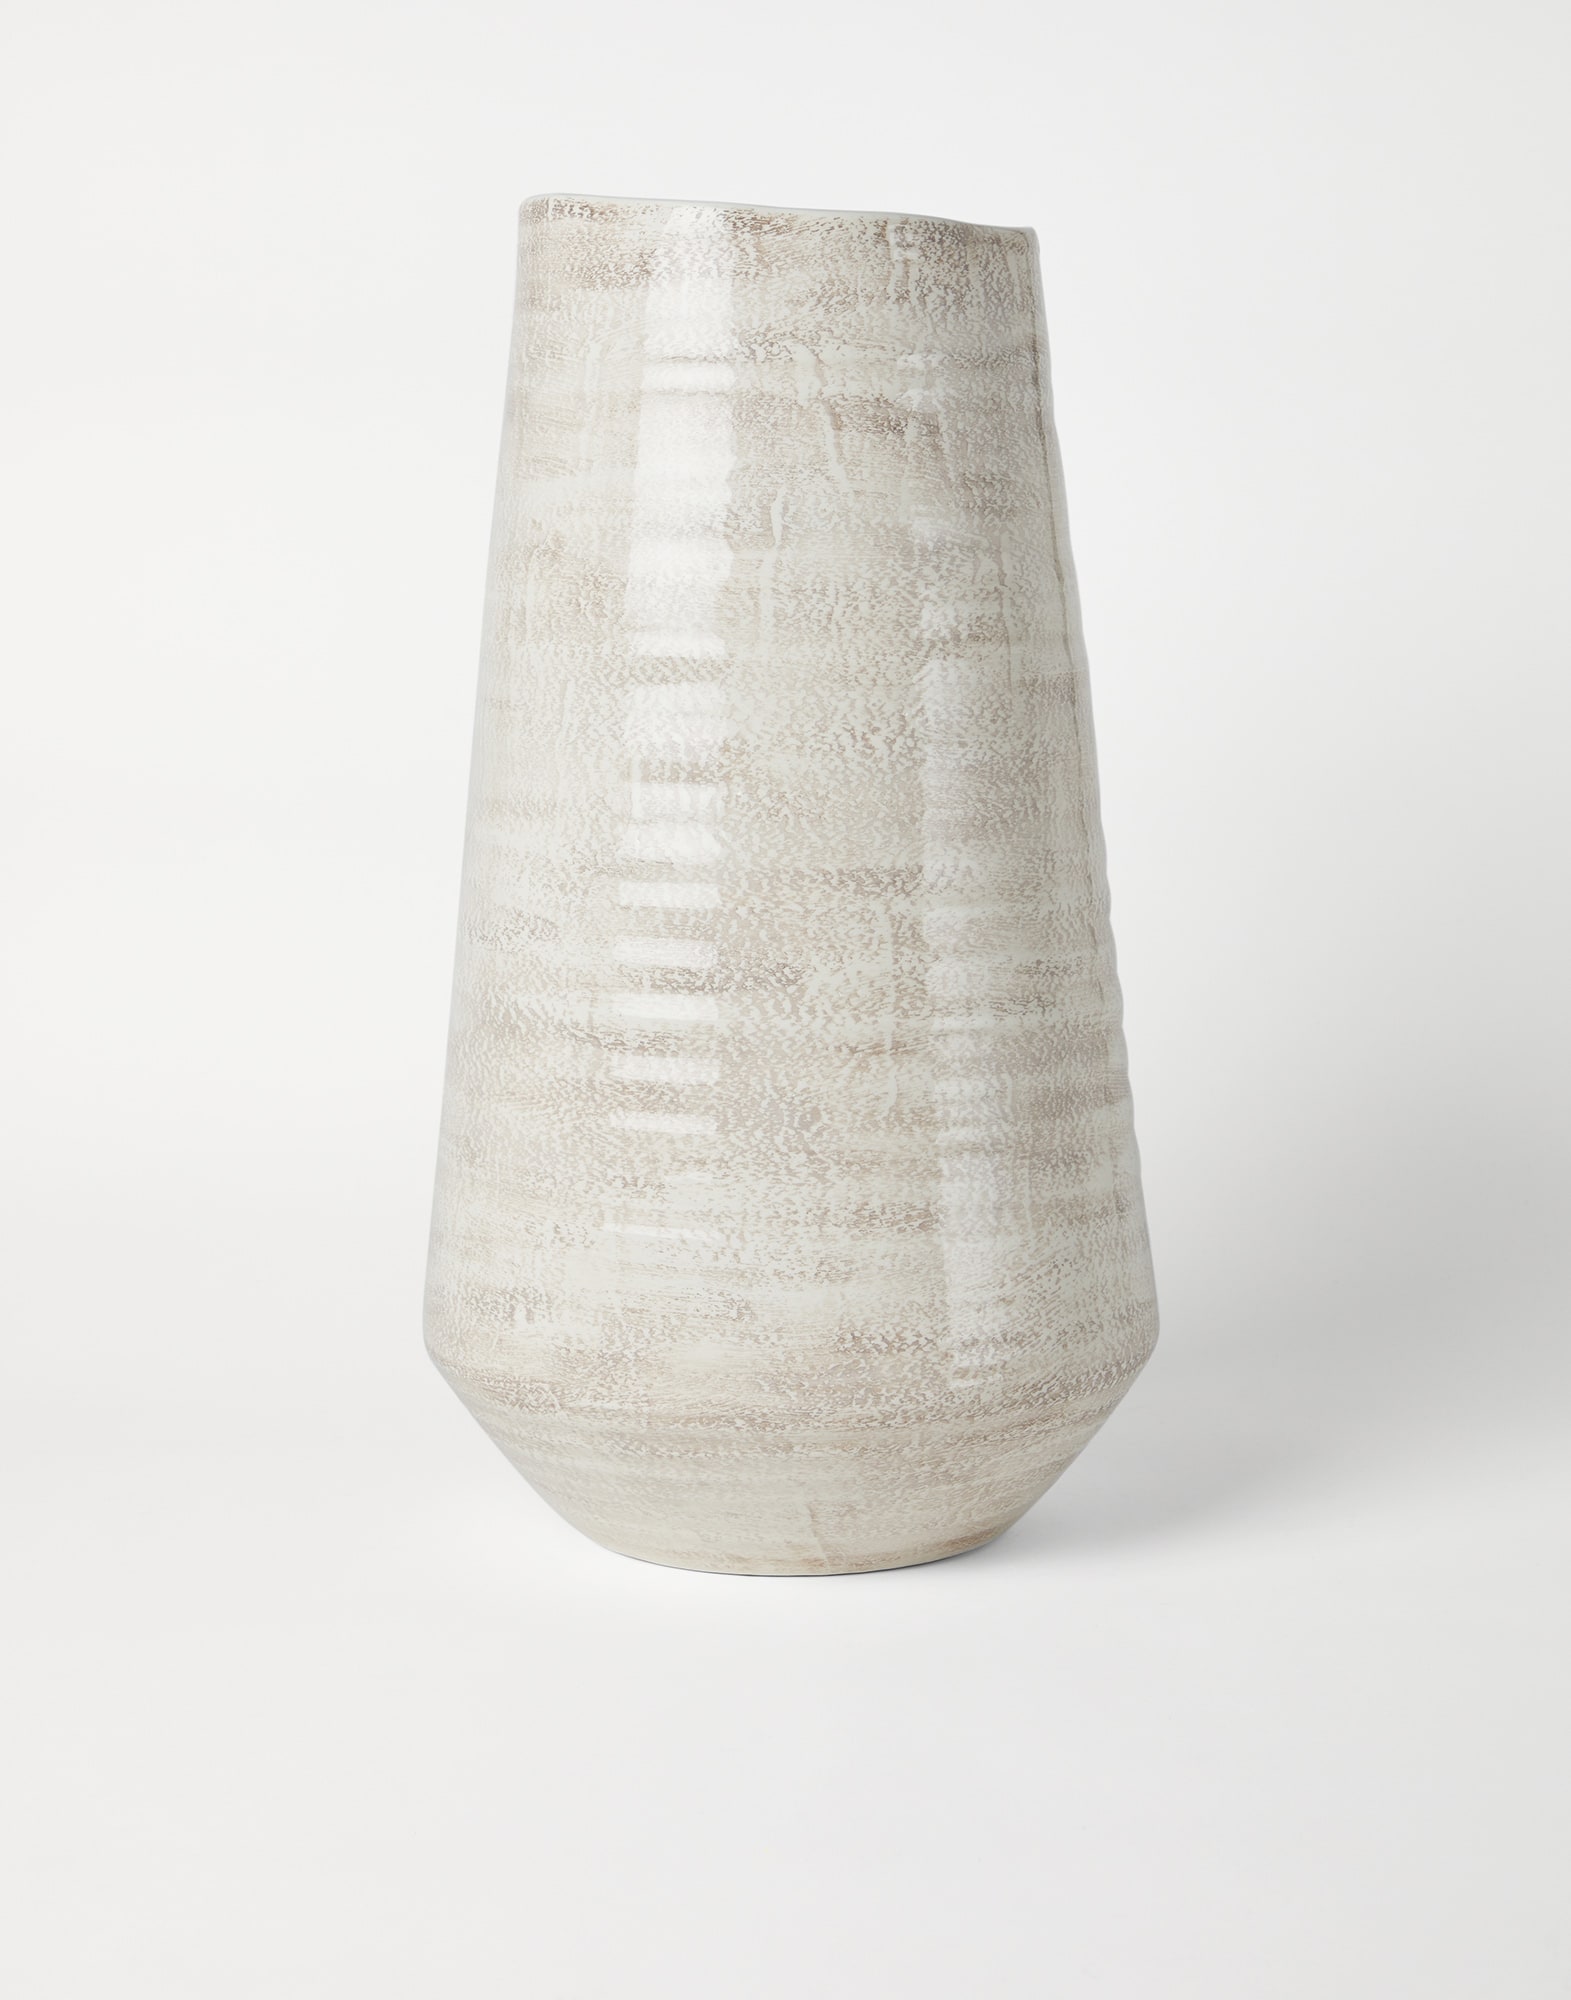 陶瓷大花瓶